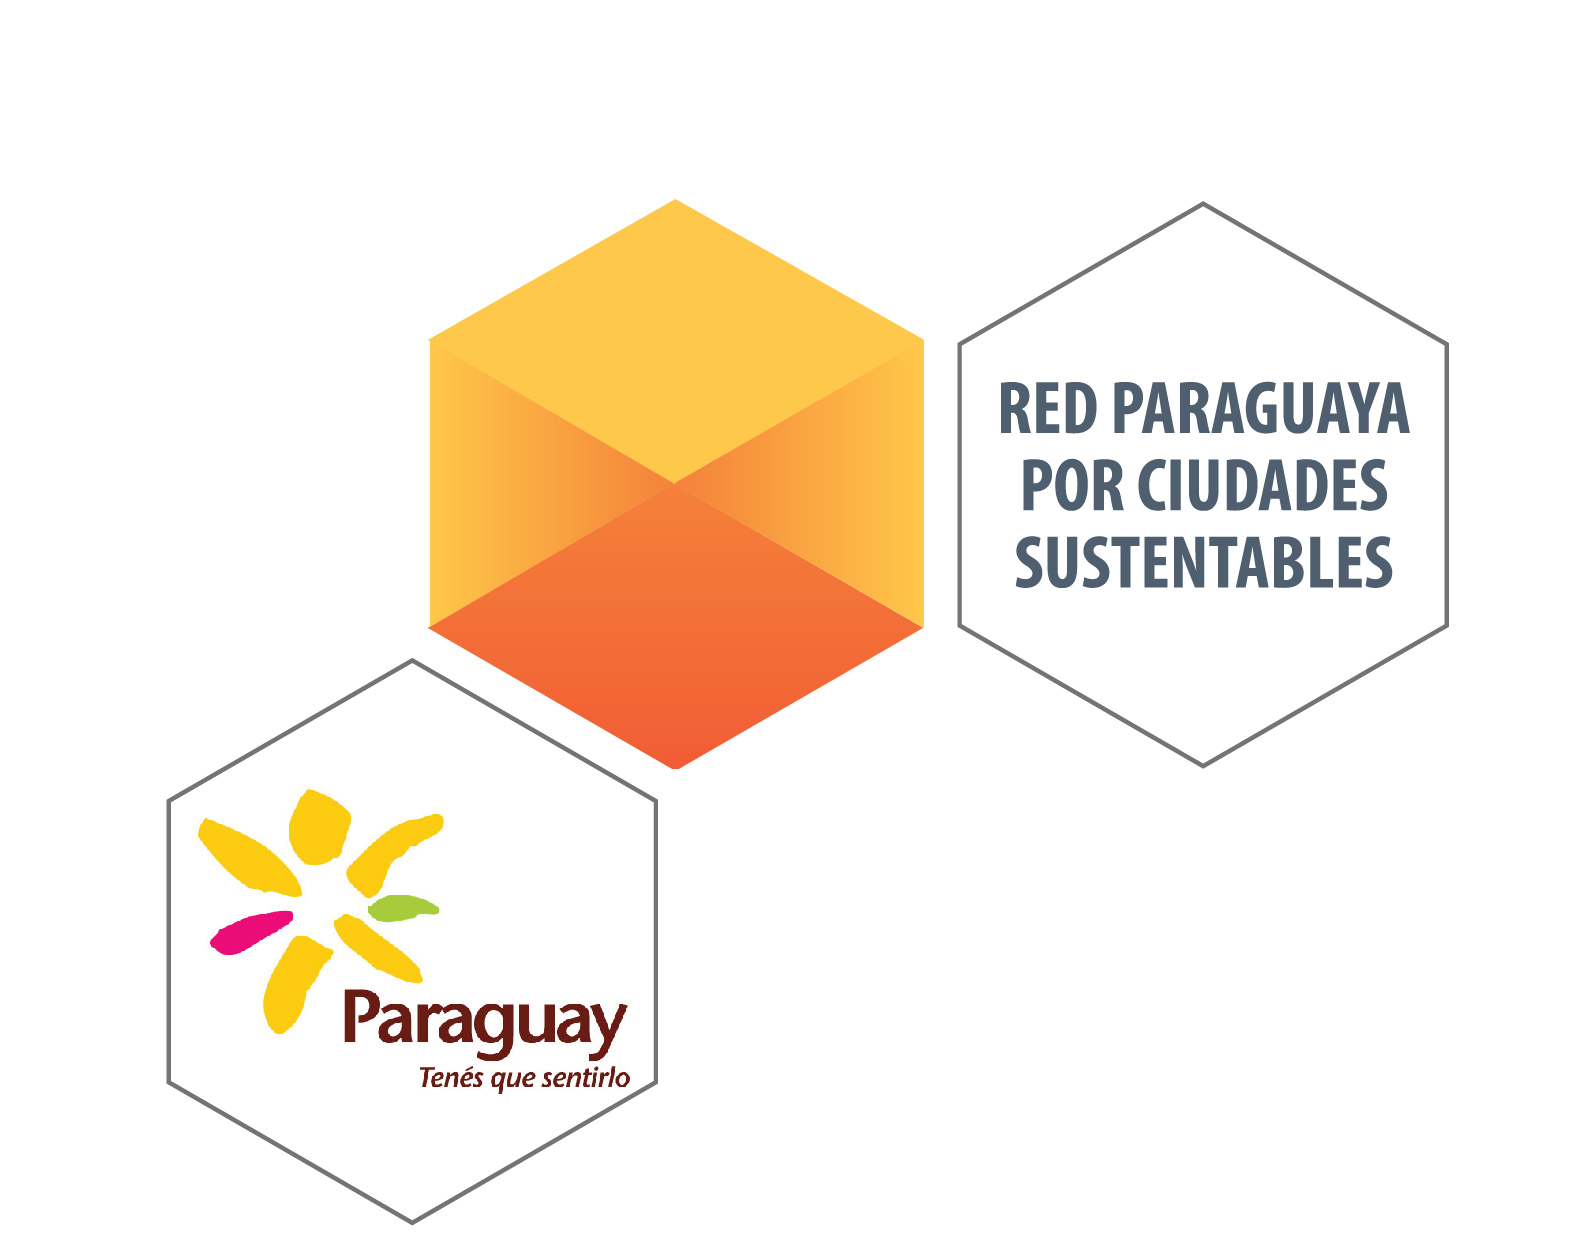 Turismo, Red Paraguaya de Ciudades Sustentables imagen